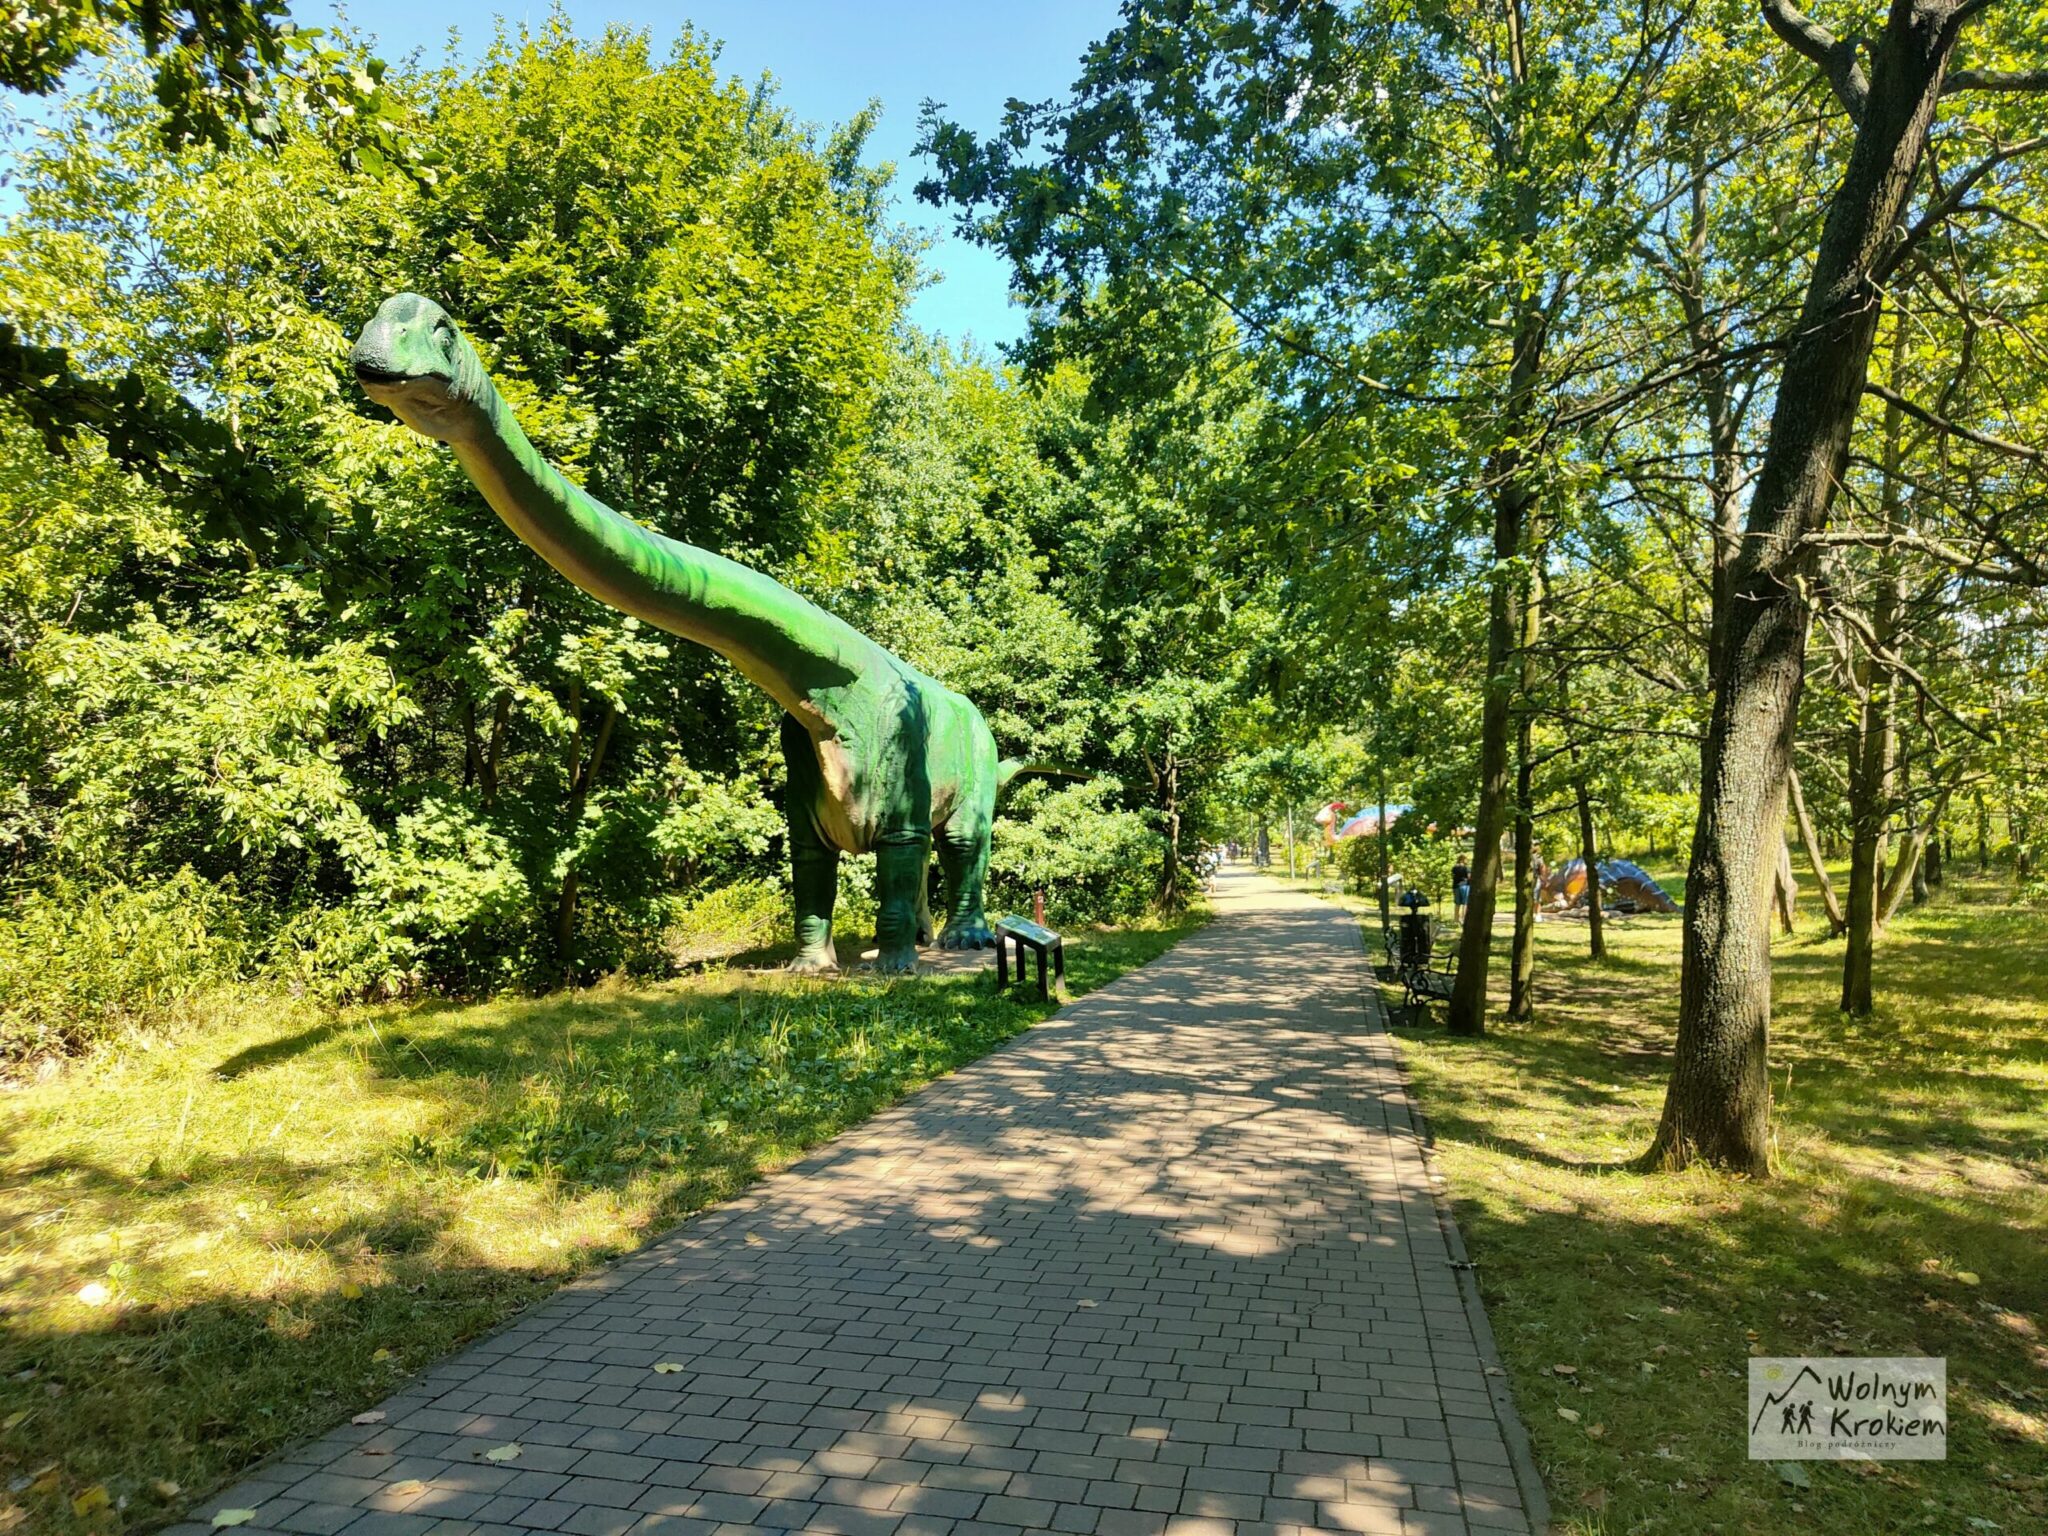 Park dinozaurów w Lubinie - darmowa ptaszarnia i mini zoo - Zoo Lubin